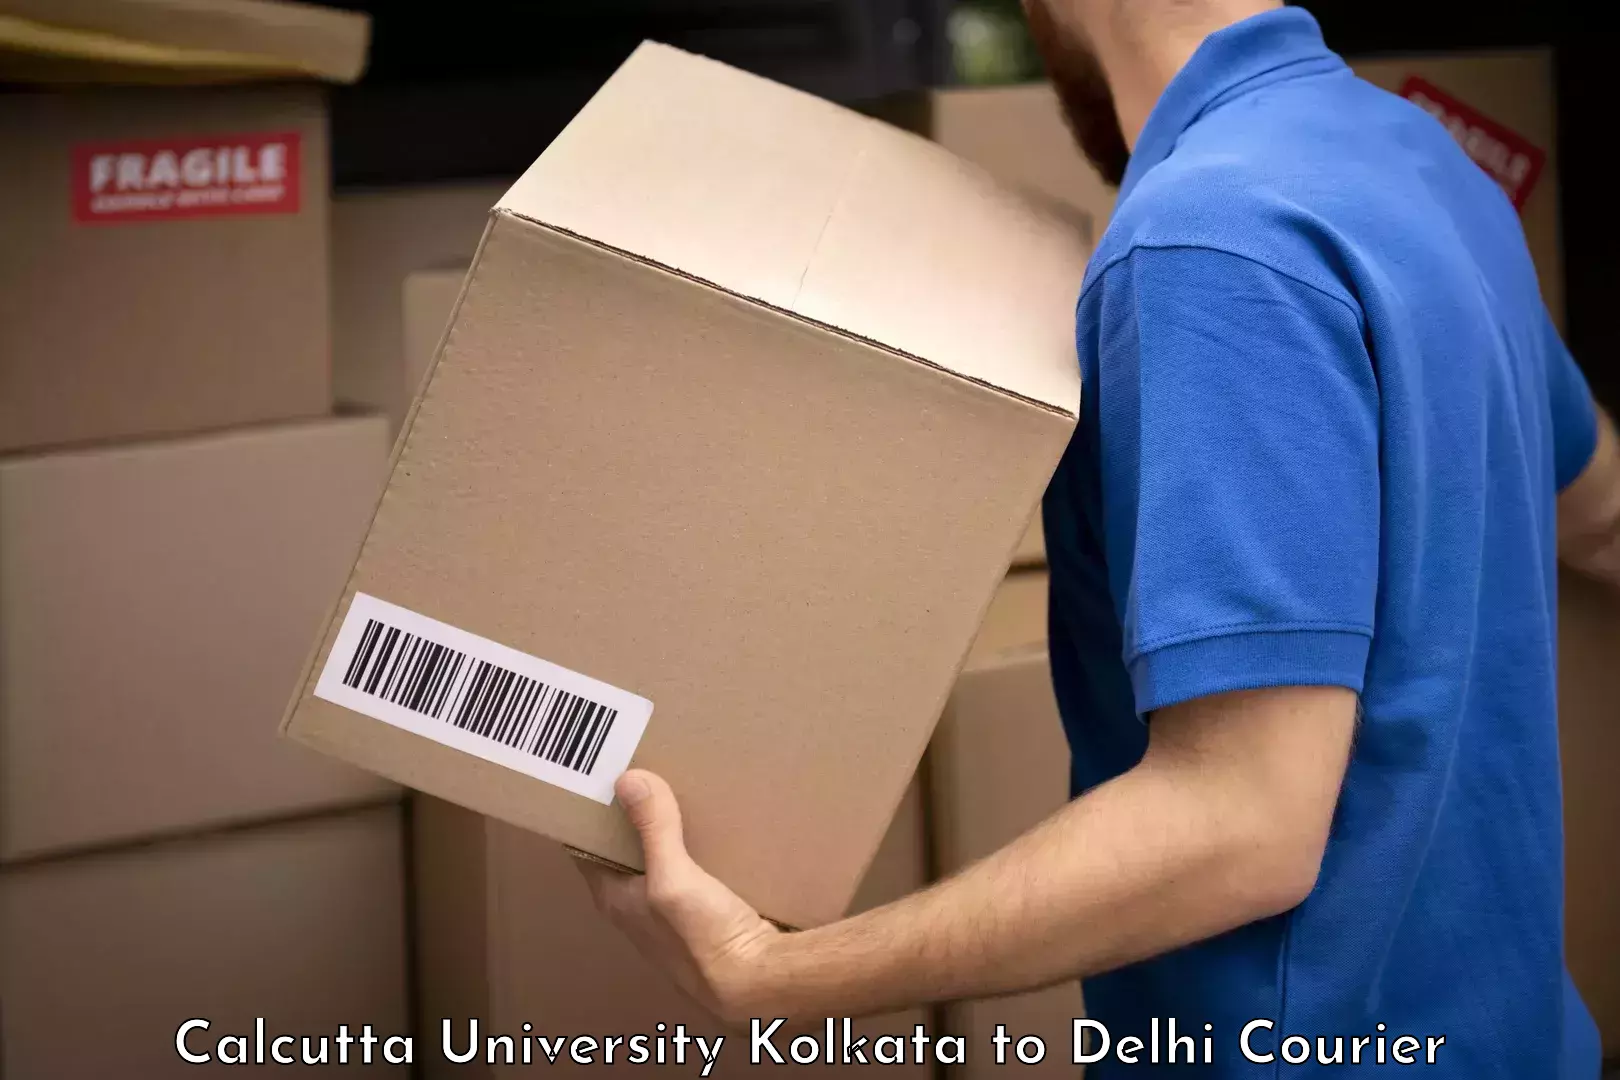 Professional baggage delivery Calcutta University Kolkata to Delhi